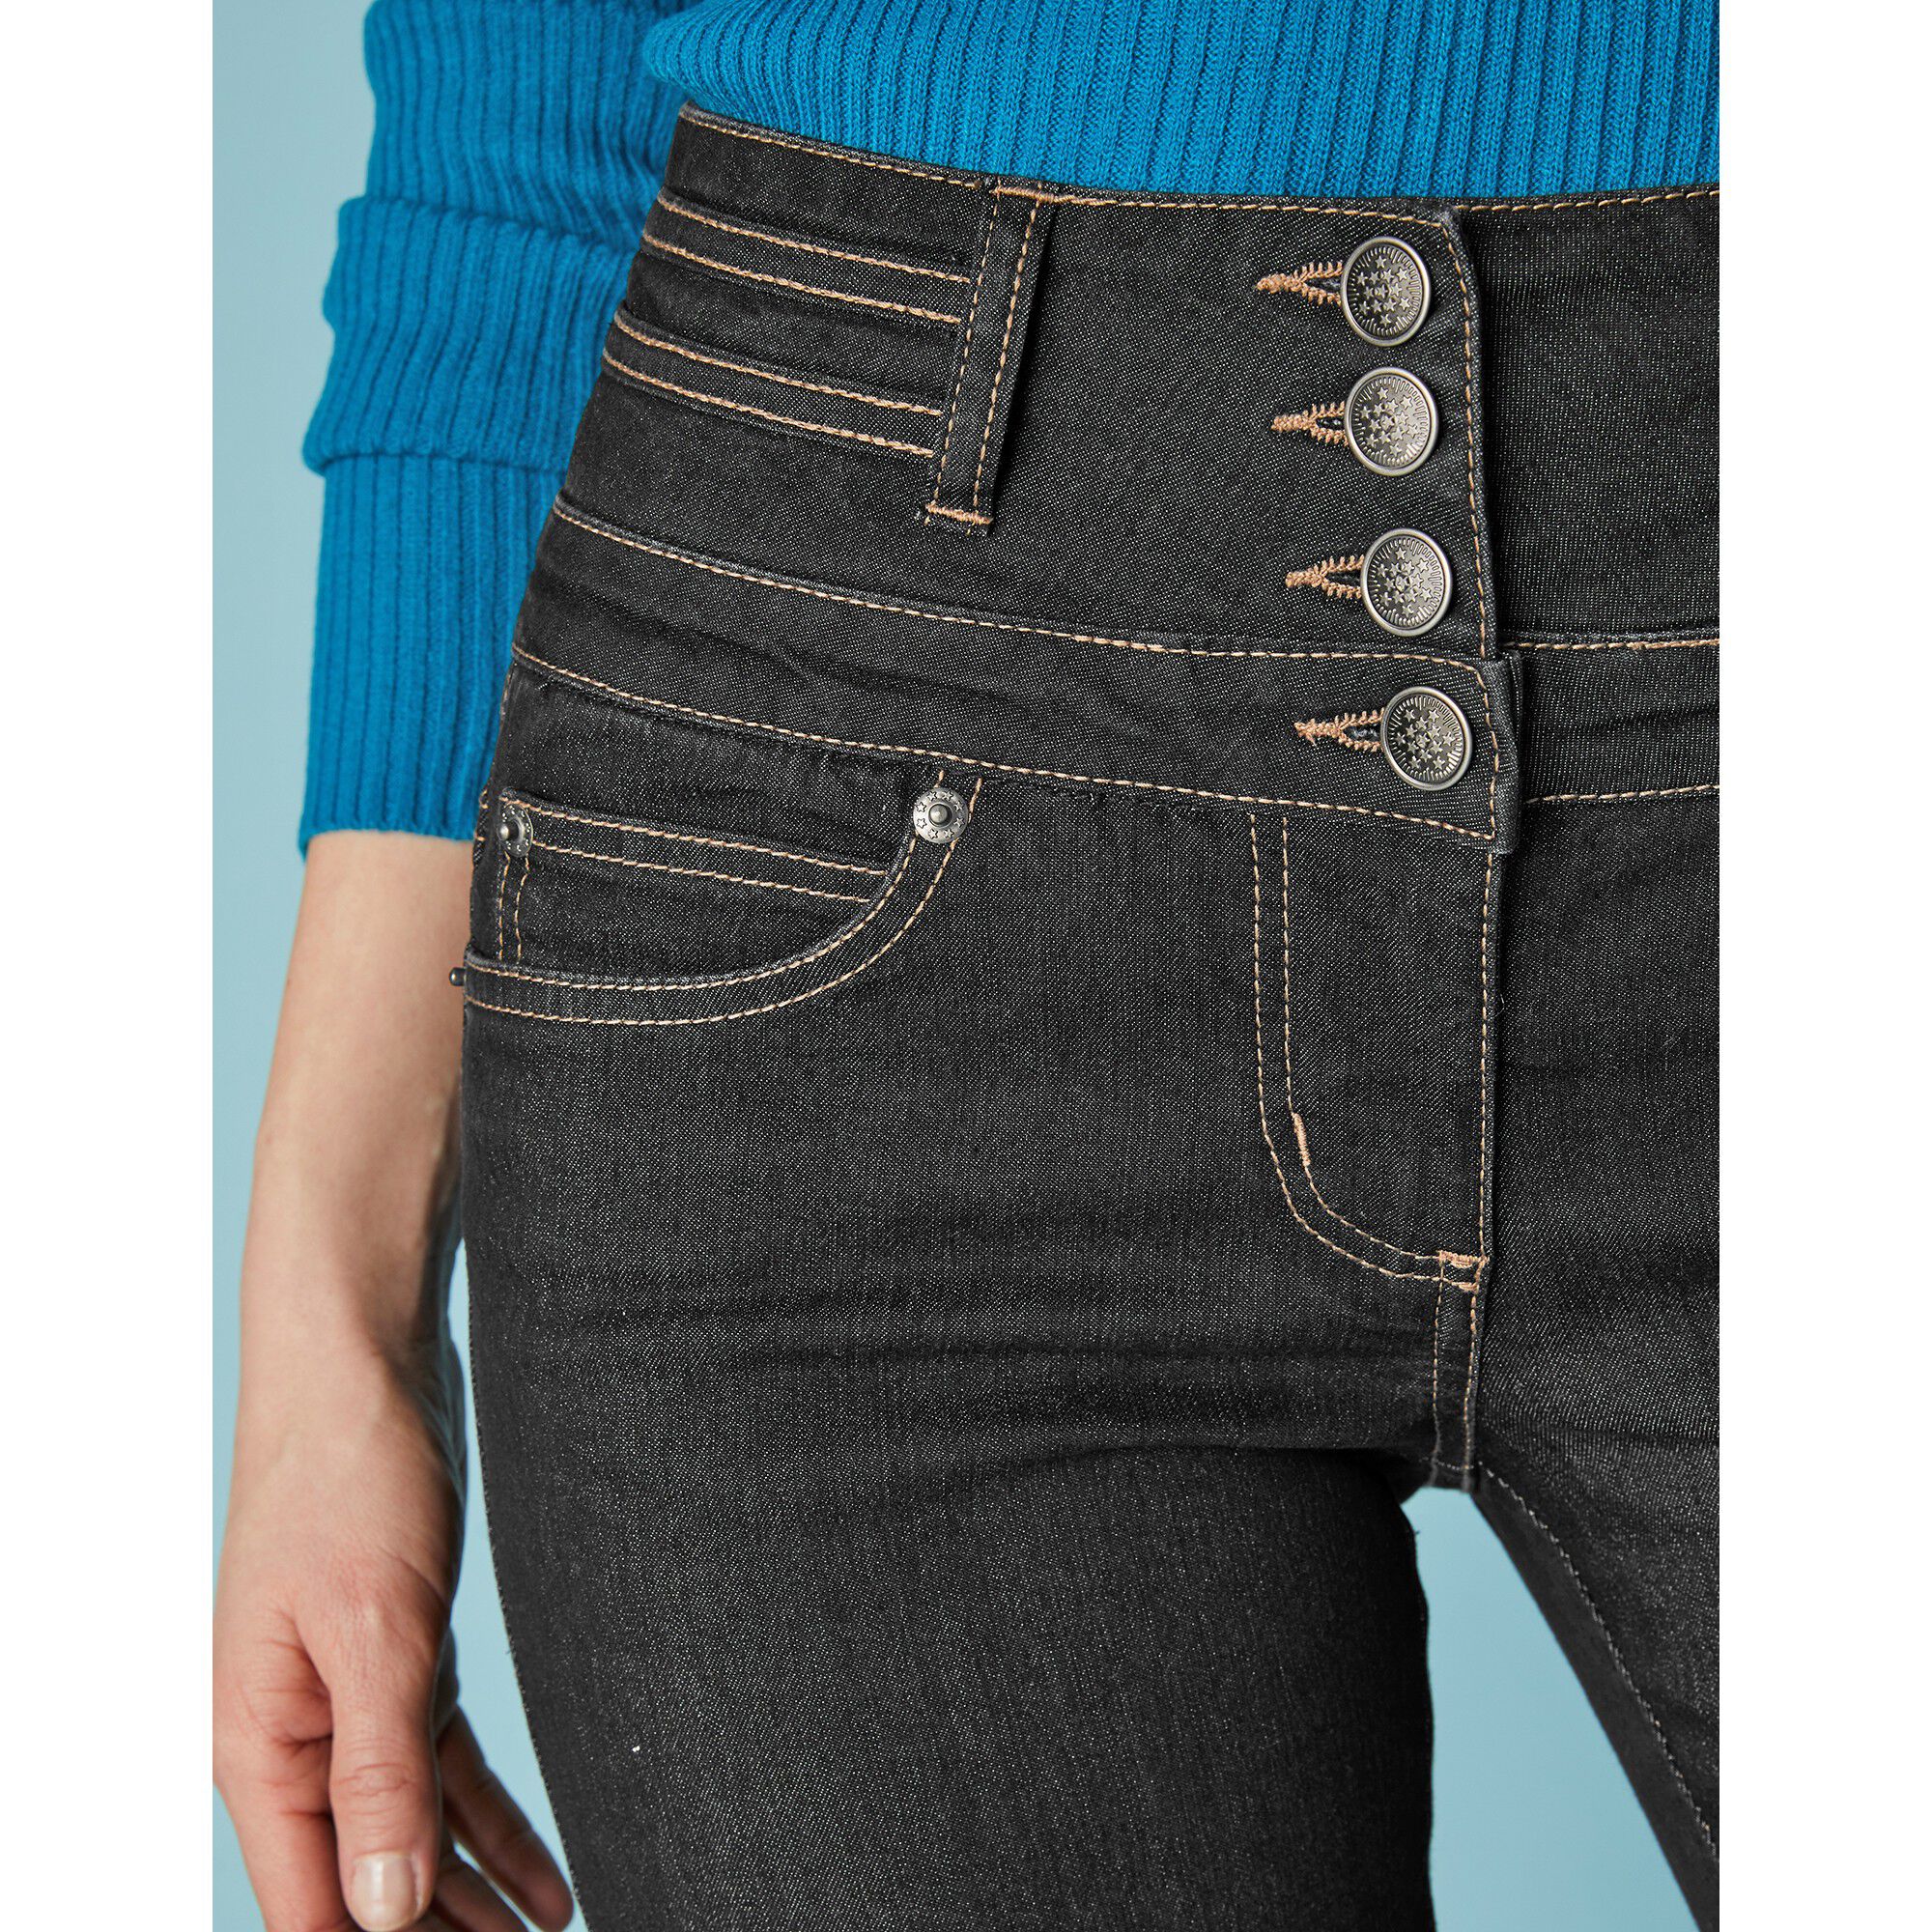 Jean Coupe Bootcut Taille Haute Stretch Blacheporte Femme Vêtements Pantalons & Jeans Jeans Bootcut jeans 78 Cm Entrej 